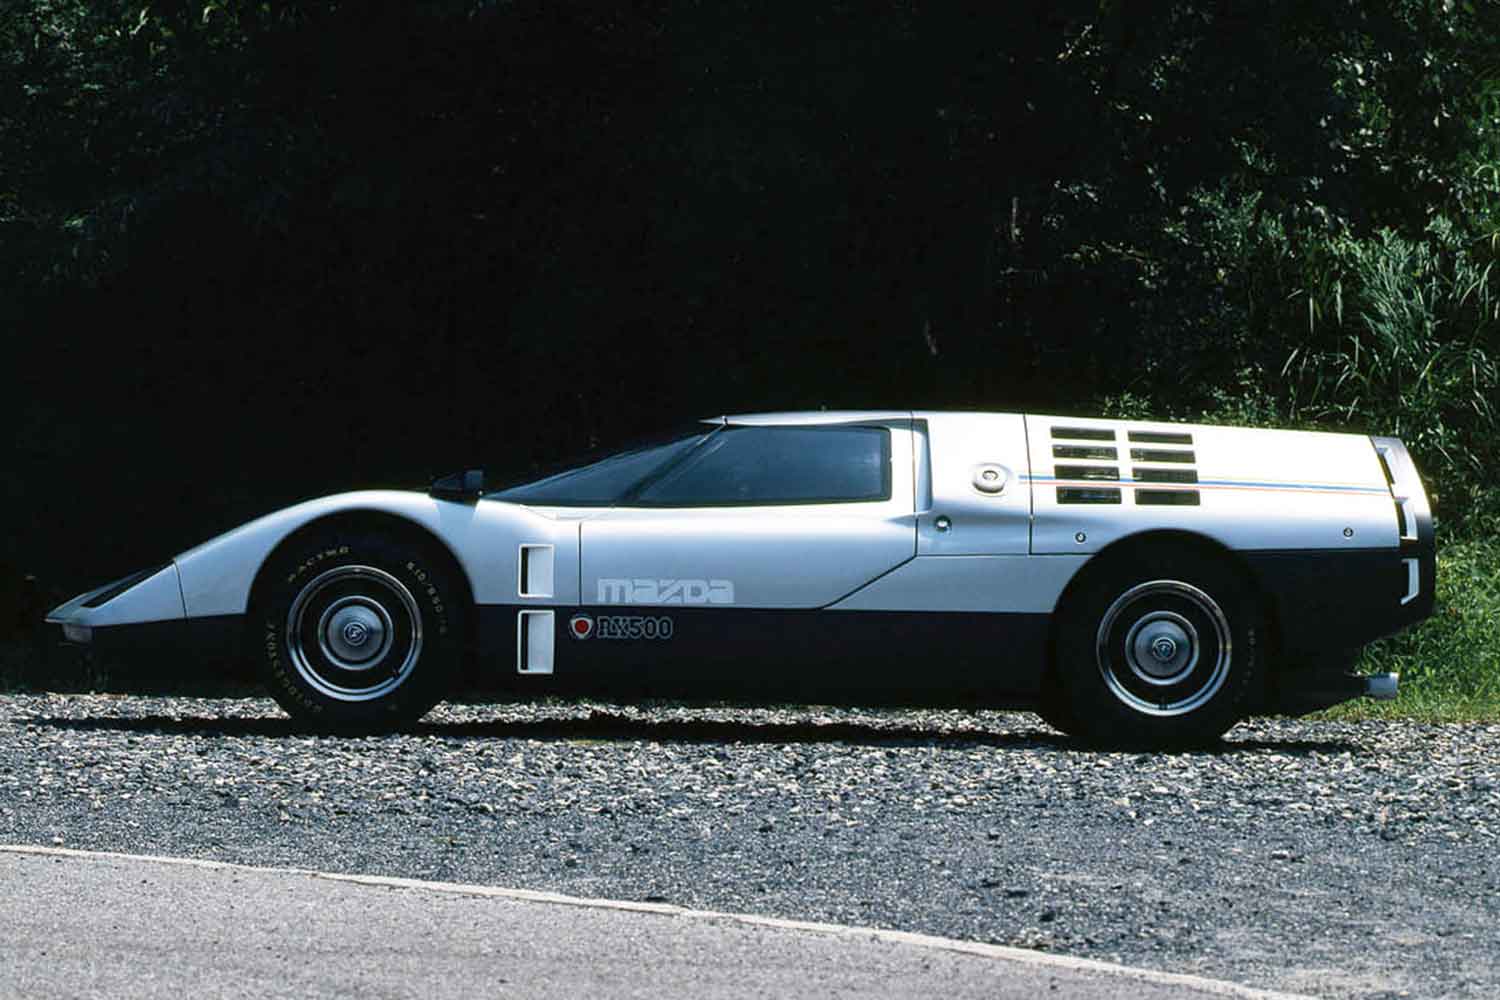 ロータリーを積んだスーパーカー!?　1970年の東京モーターショーで人々を仰天させたRX500とは